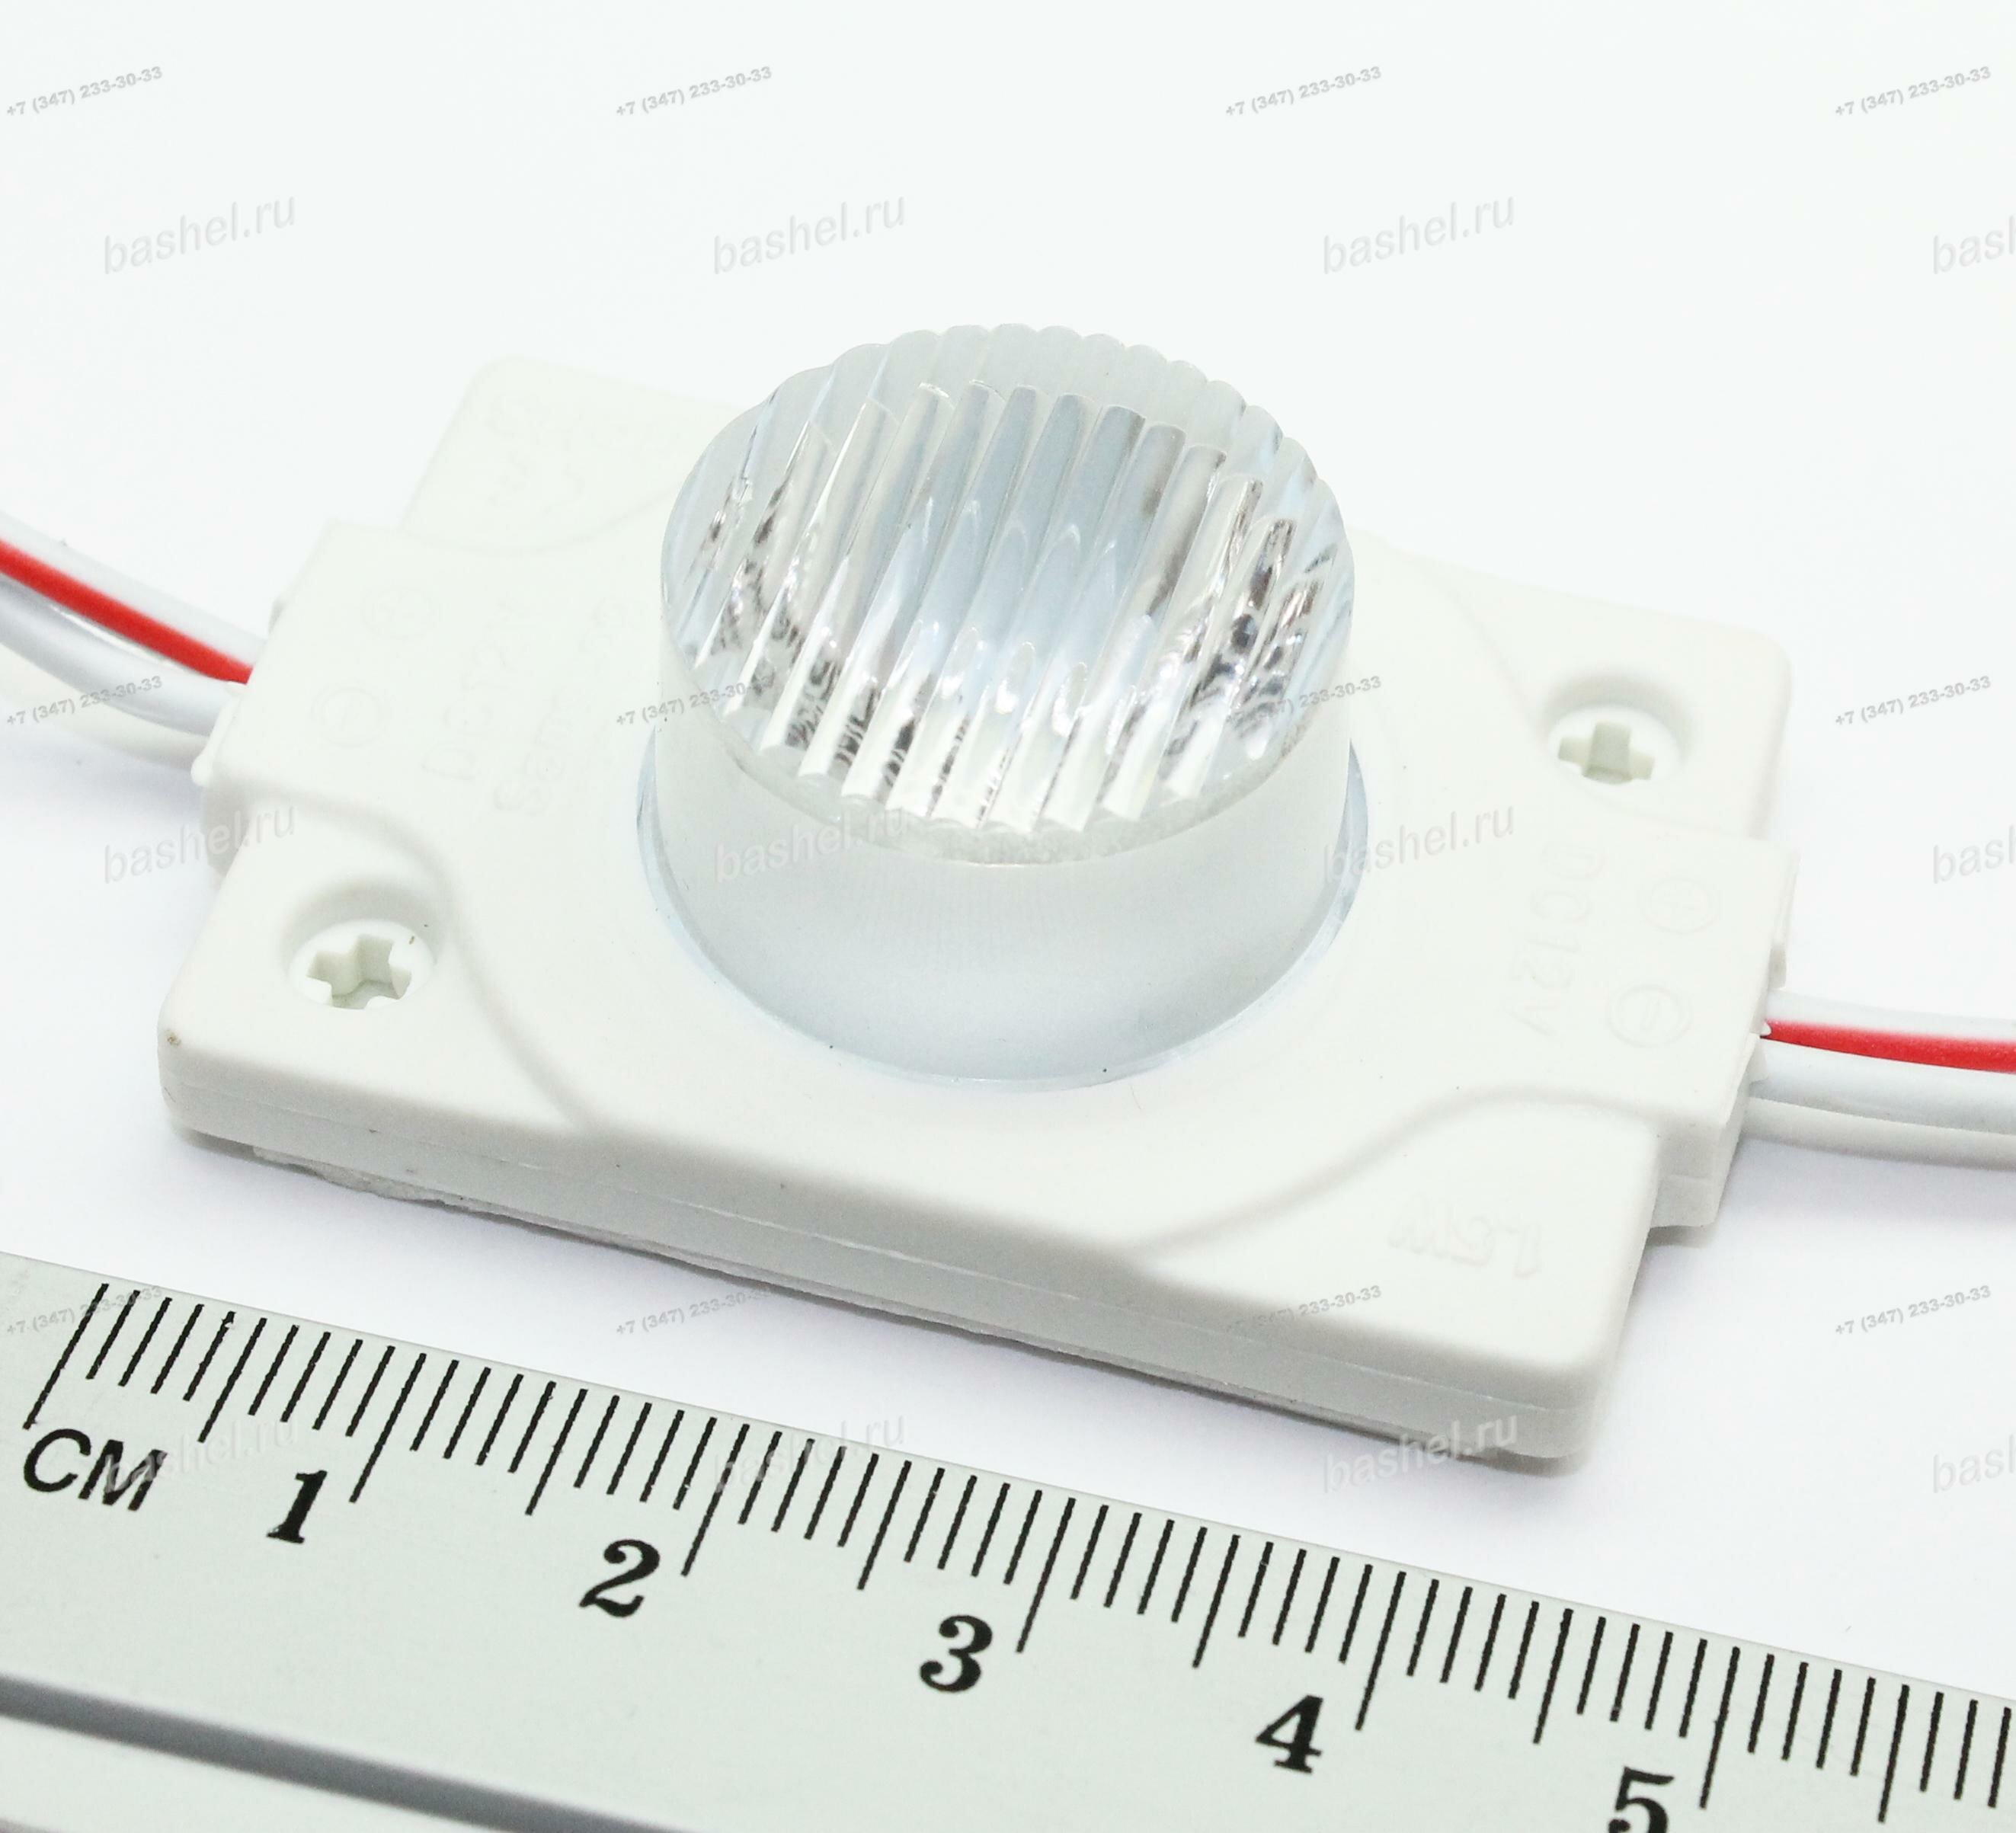 LED modul PCB-12-48*32-3030-Samsung-W-IP65-Lens-5-30° 120Lm 1.5W 6500k 48x32x15mm White (для торцевой подсветки с эллипт